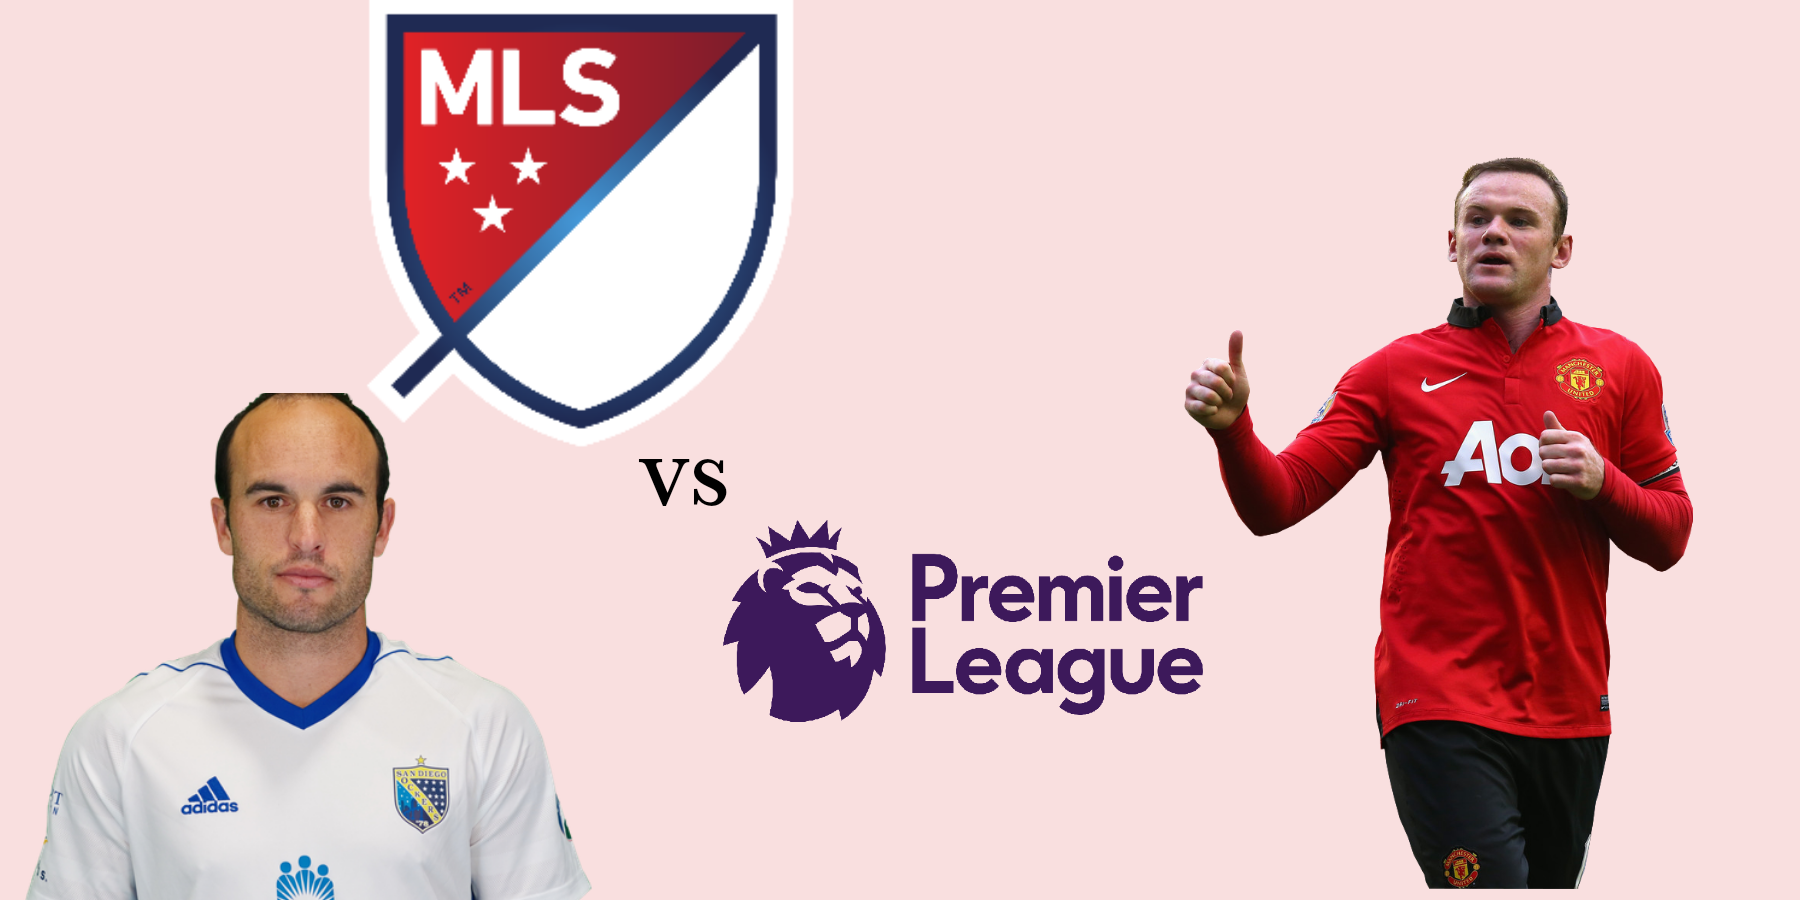 Is MLS same as Premier League?